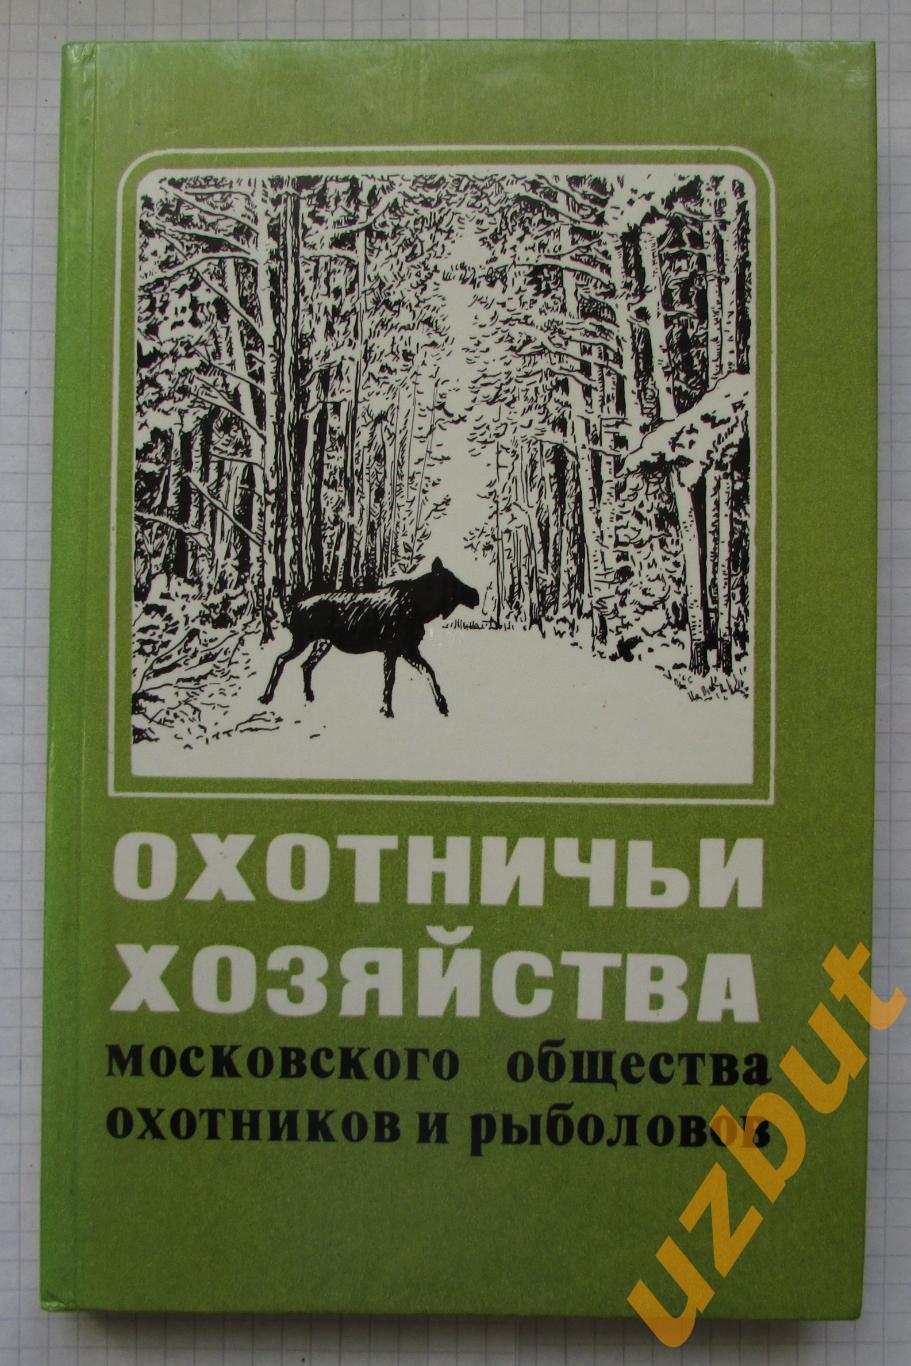 Охотничьи хозяйства московского общества охотников и рыболовов 1982